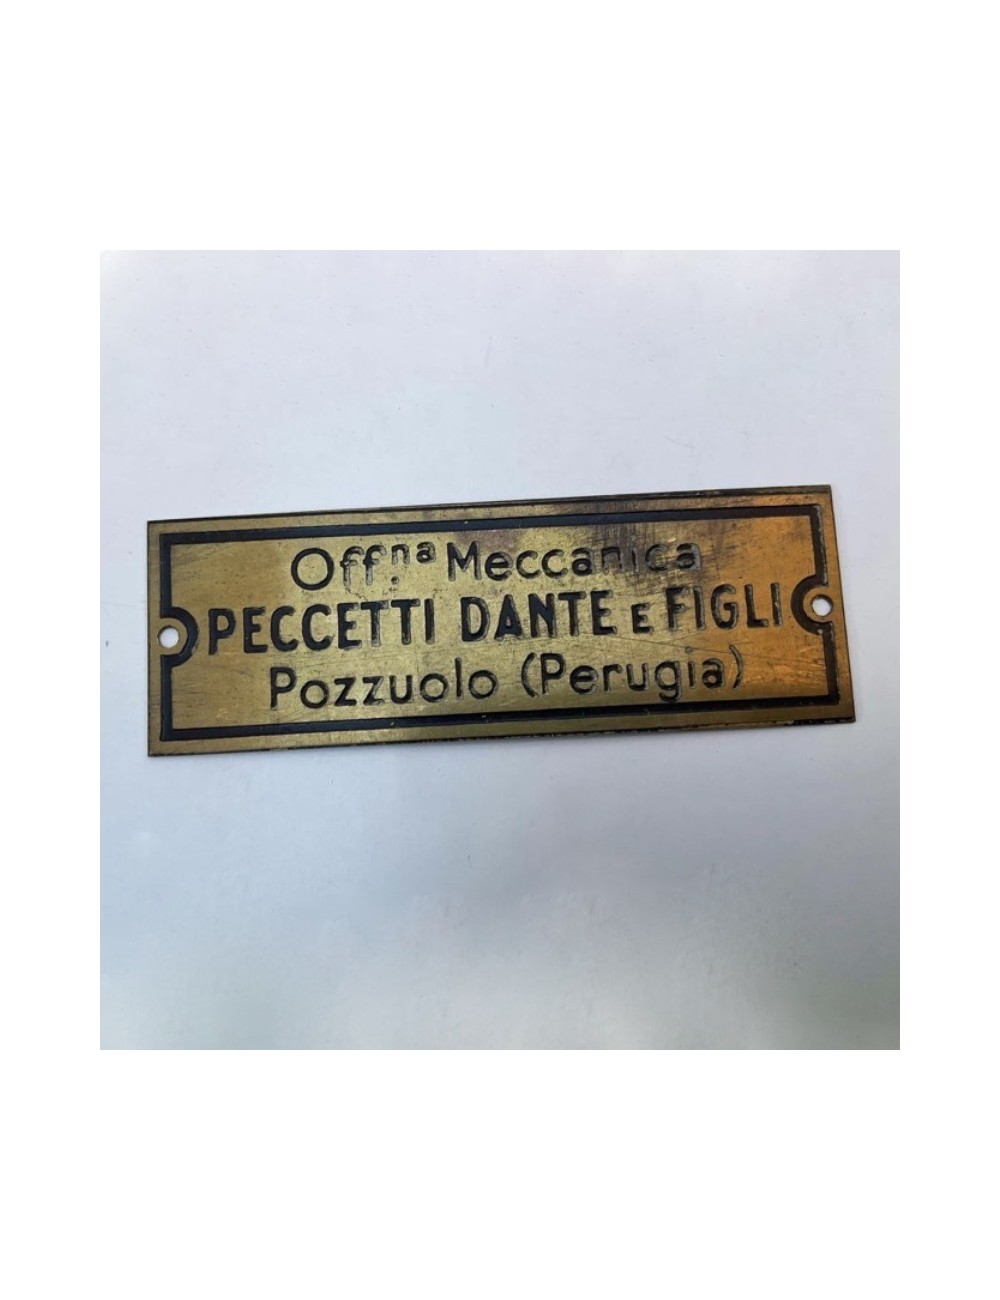 Targhetta concessionario Peccetti Dante e Figli. Dimensioni:  6 cm x 2 cm